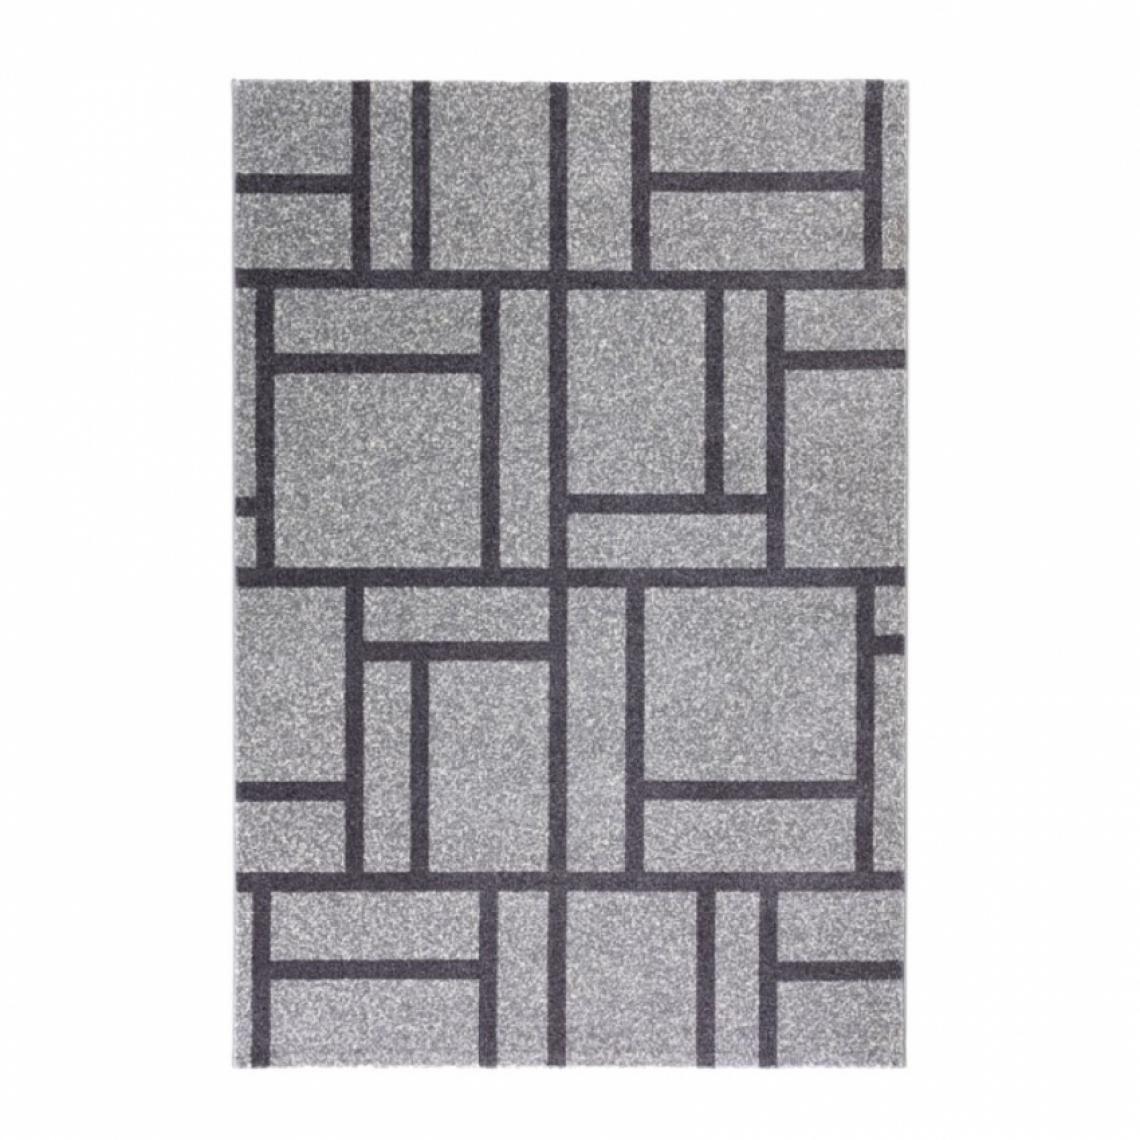 Wmd - Tapis gris noir rectangulaire design géométrique moderne Milano GRI015, Taille: 80 x 150 - Tapis